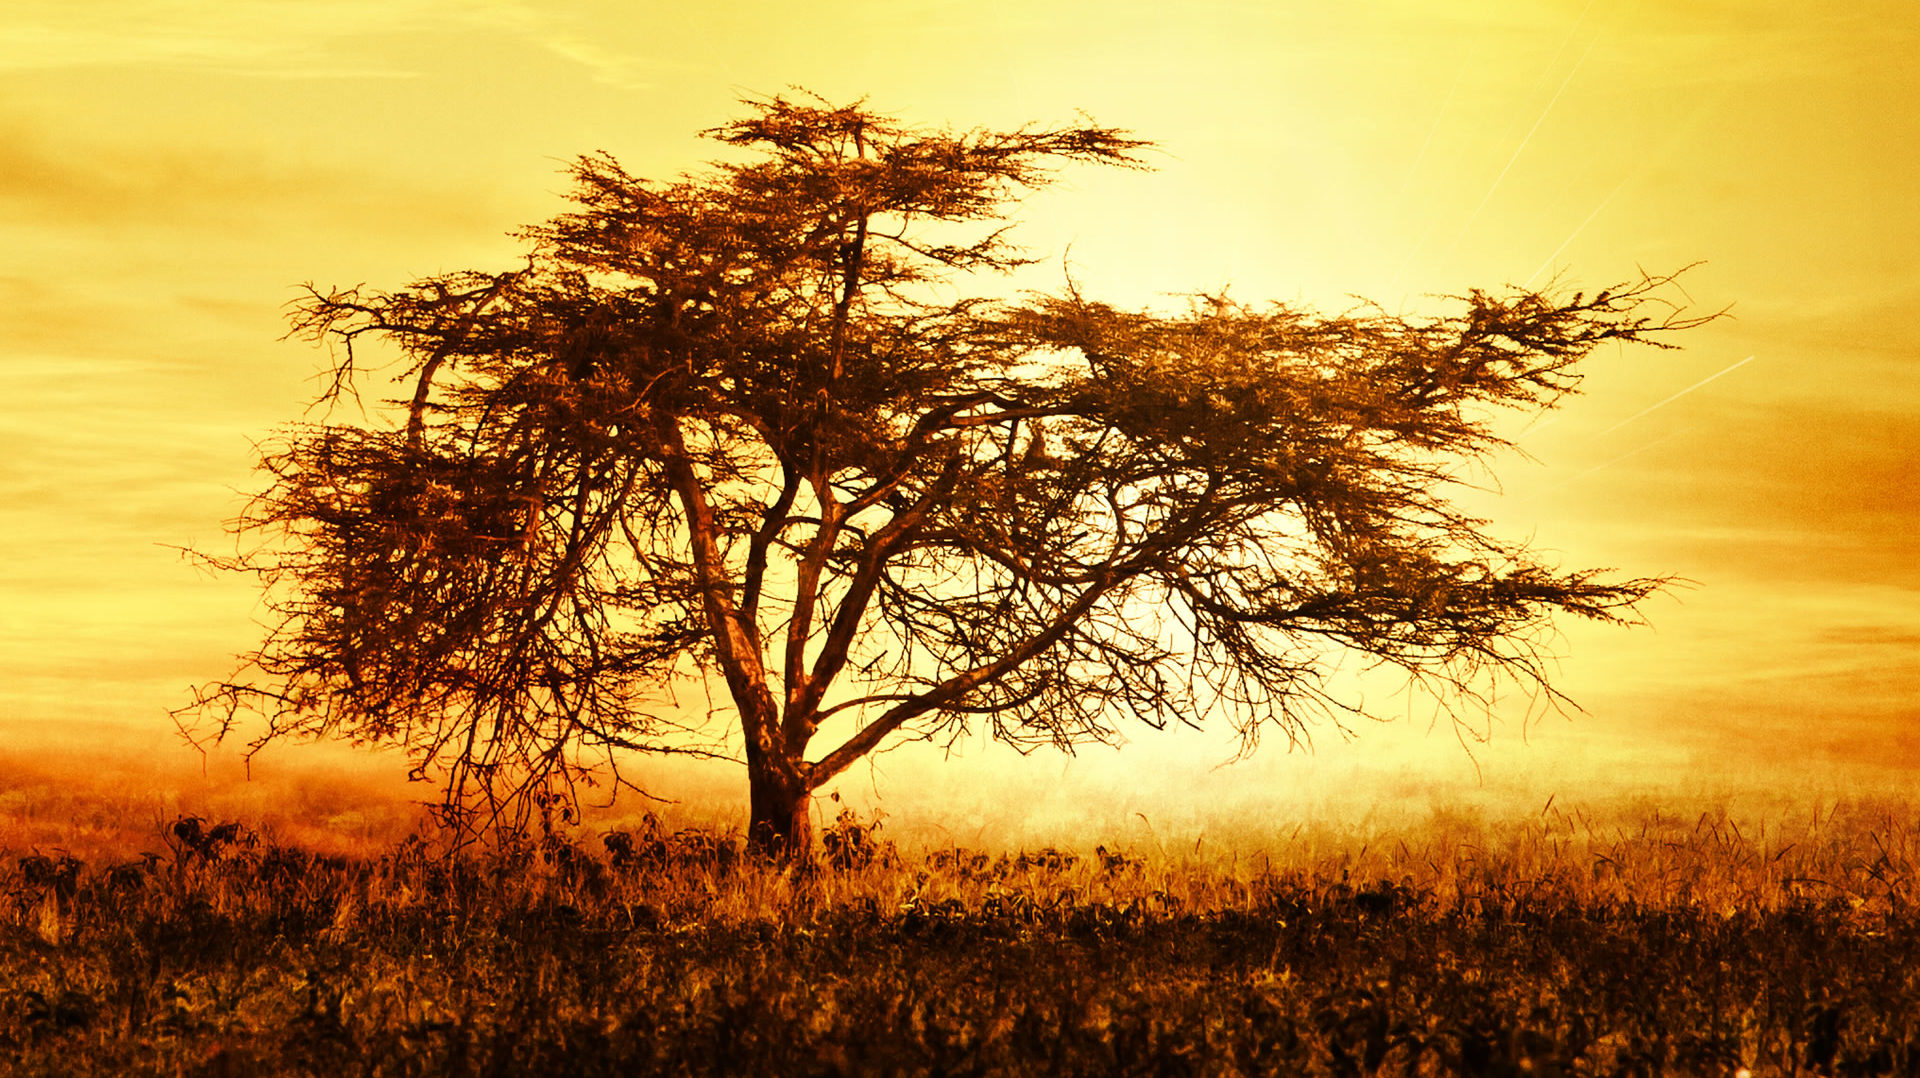 Acacia Tree, Kenya